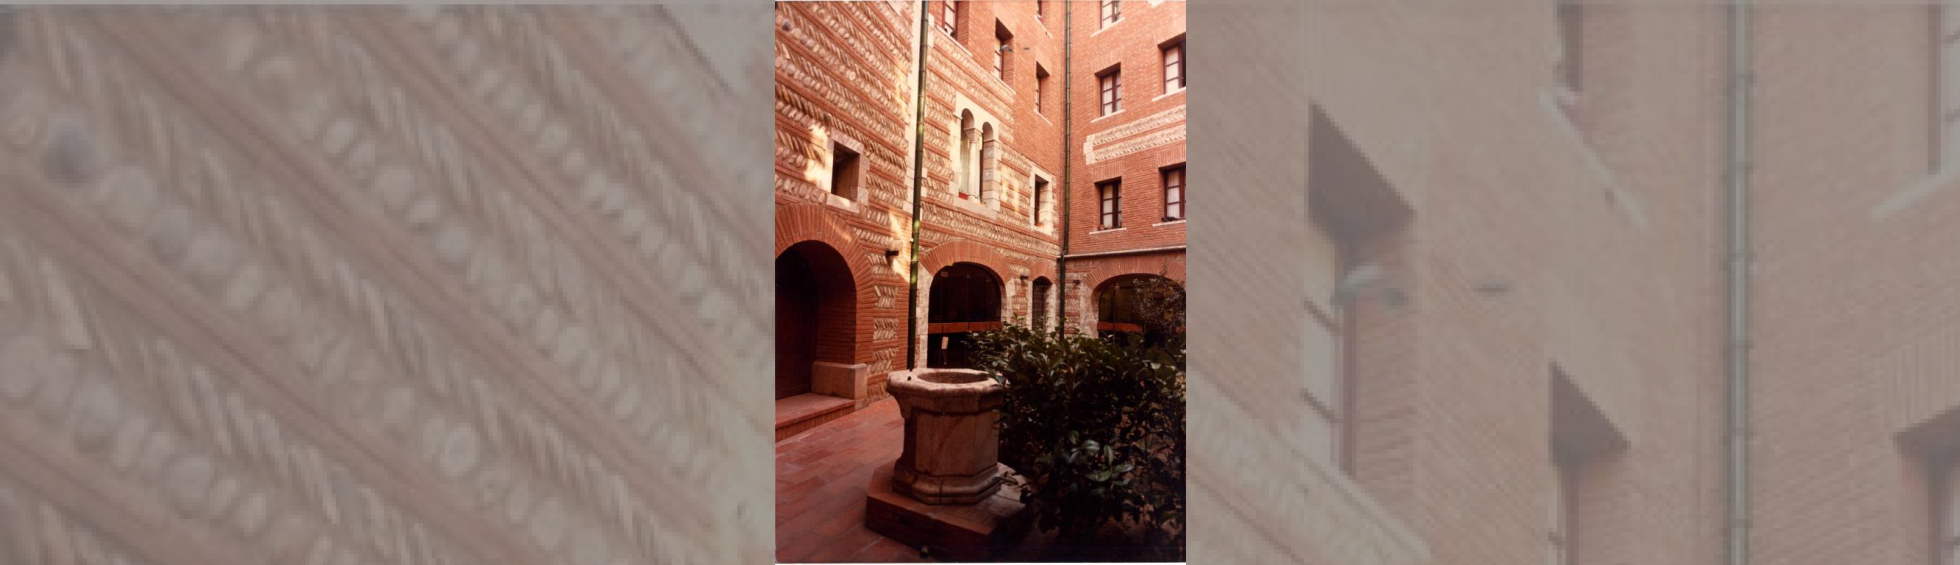 Hôtel d'Ortaffa, Perpignan intérieur- Photographie couleur, années 1980